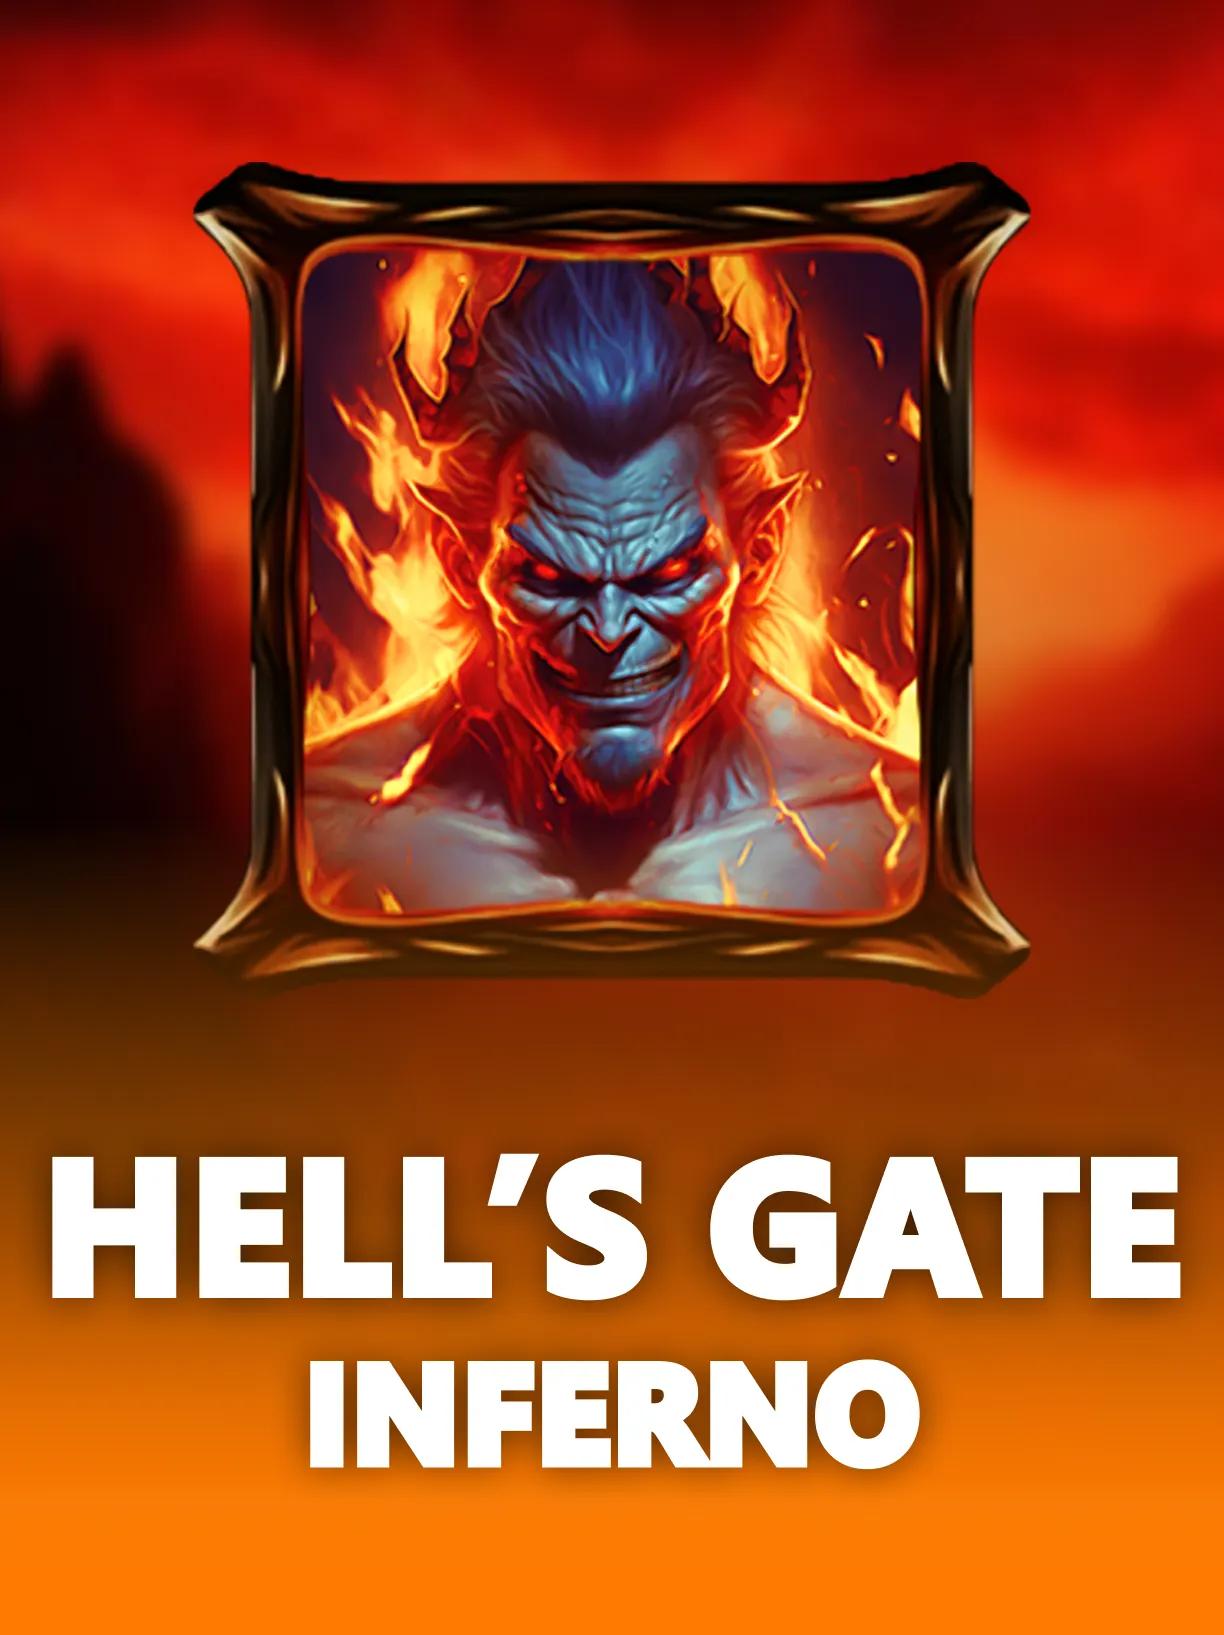 ug_Hells_Gate_Inferno_square.webp